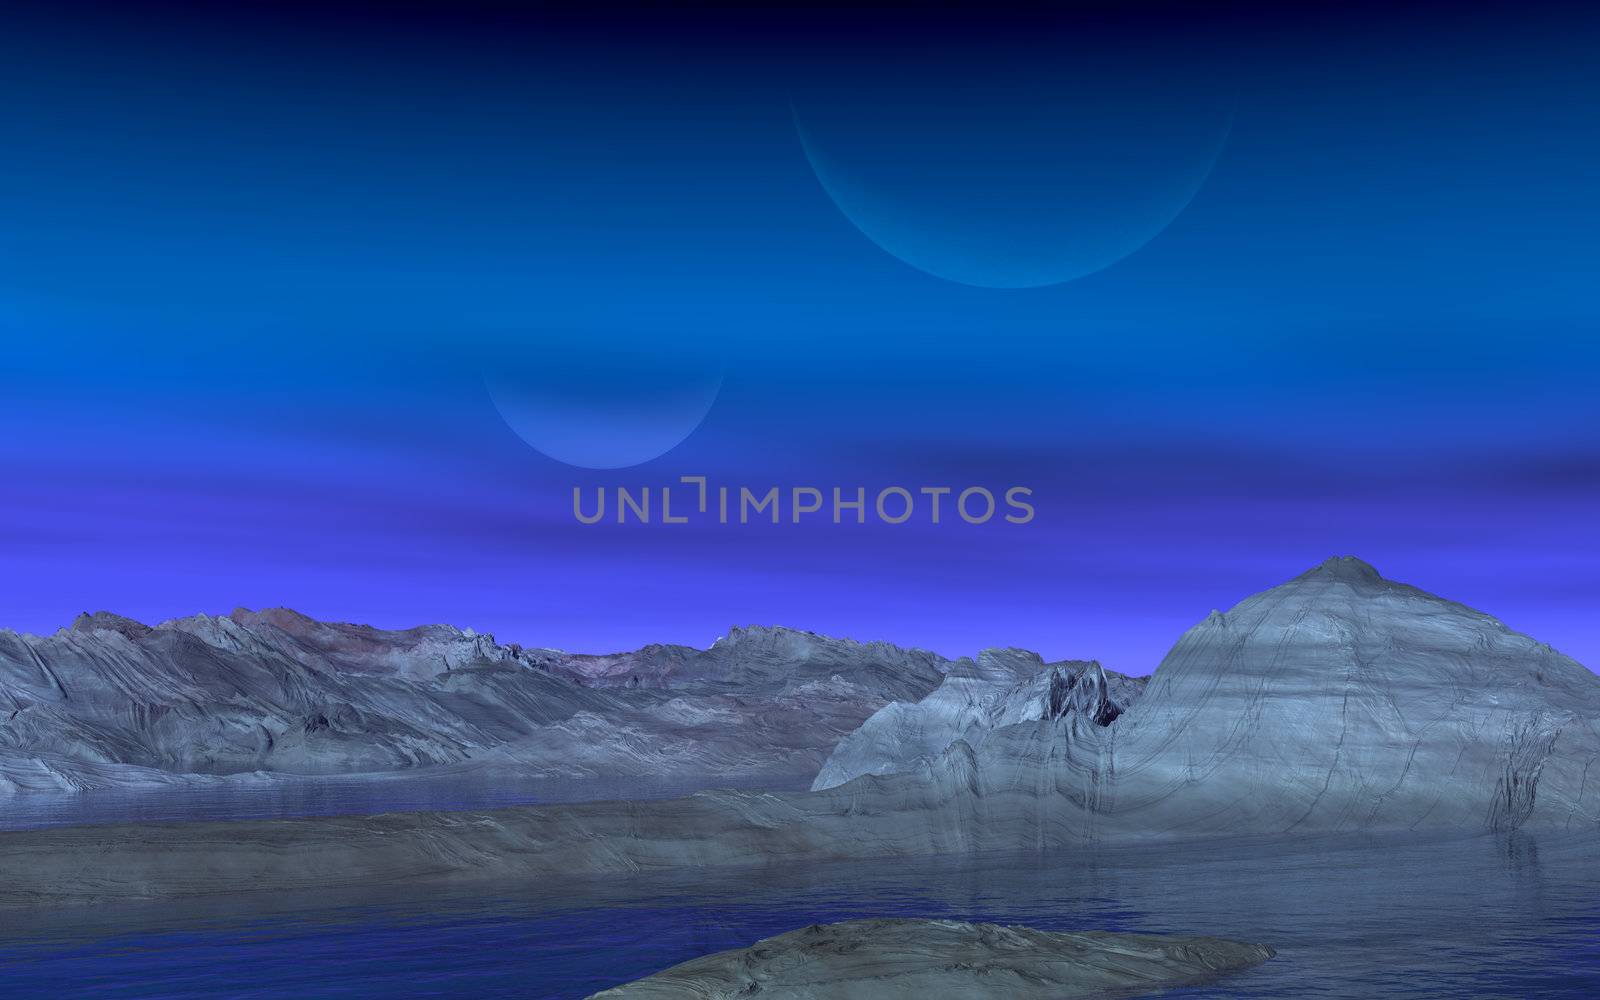 This image shows a alien landscape